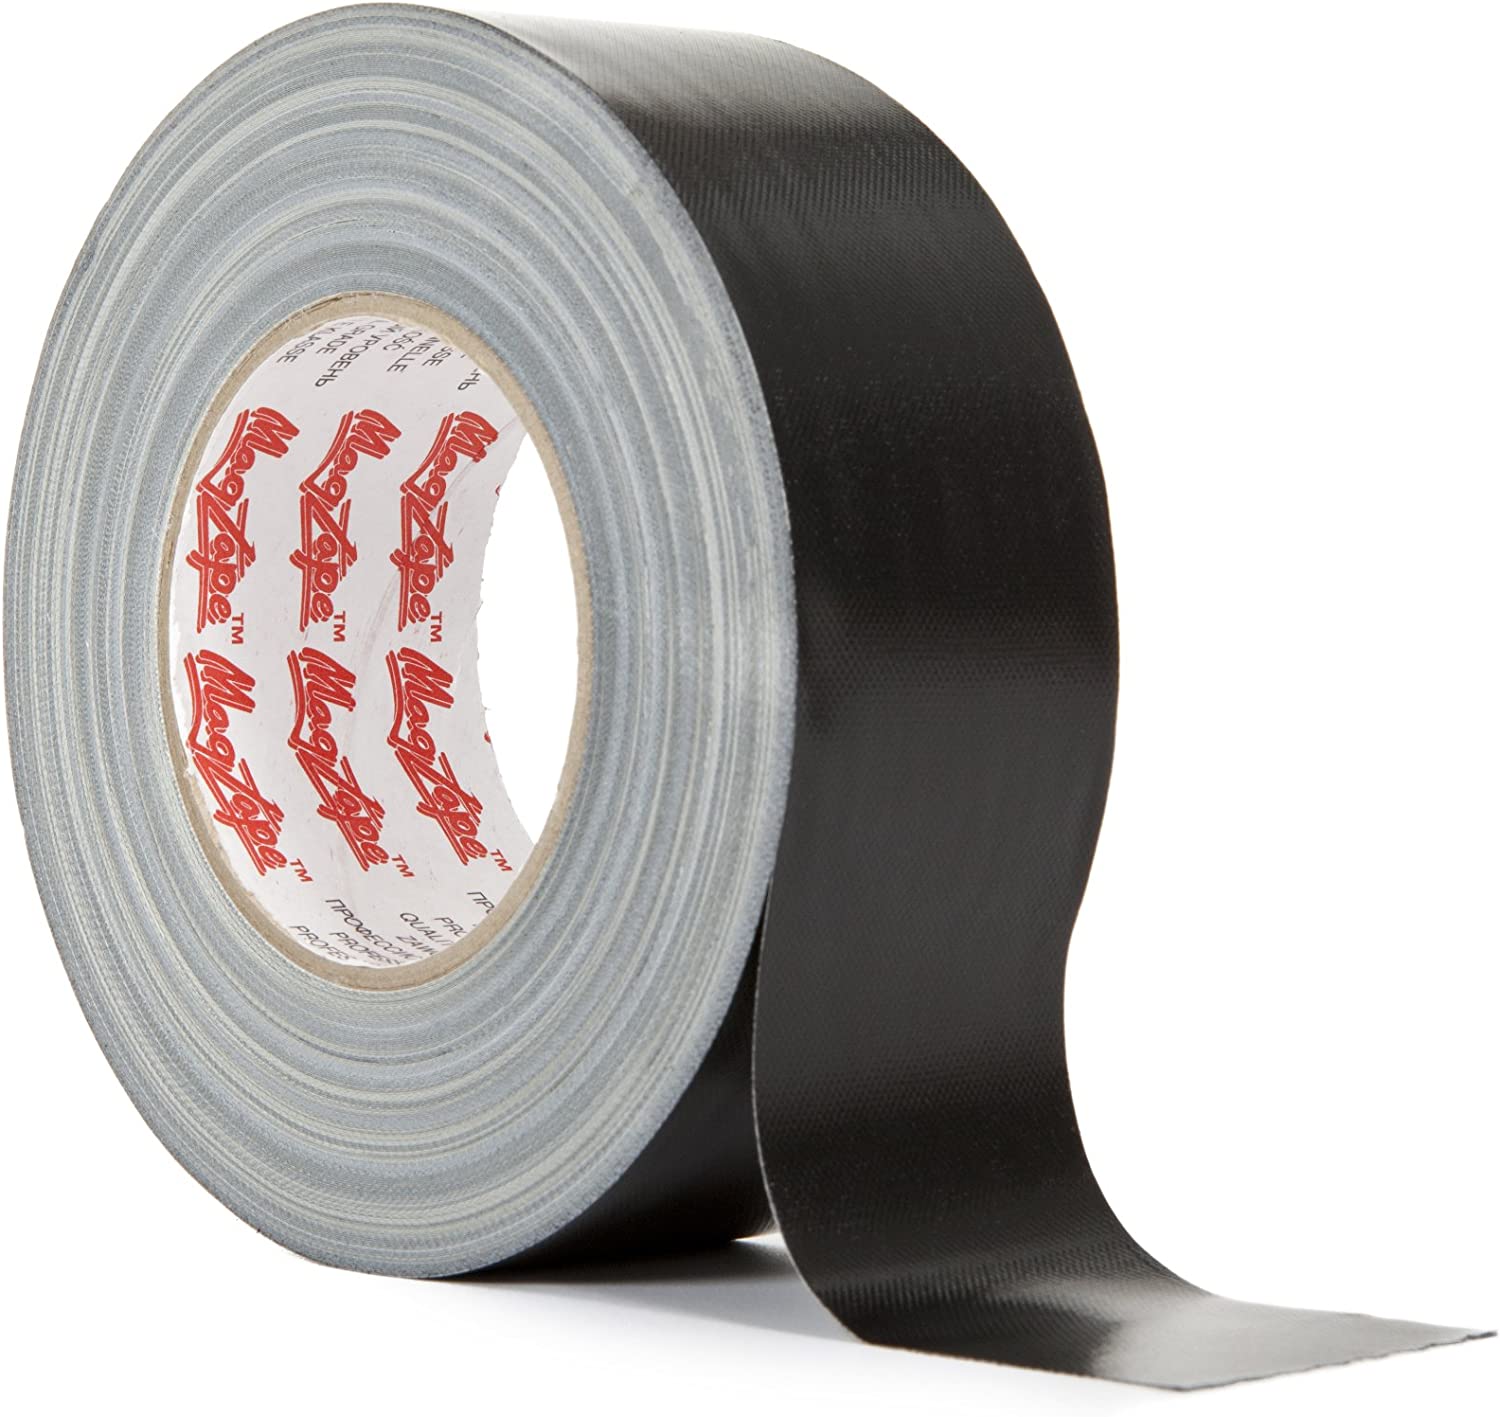 Magtape Gaffa Tape 50m x 50mm